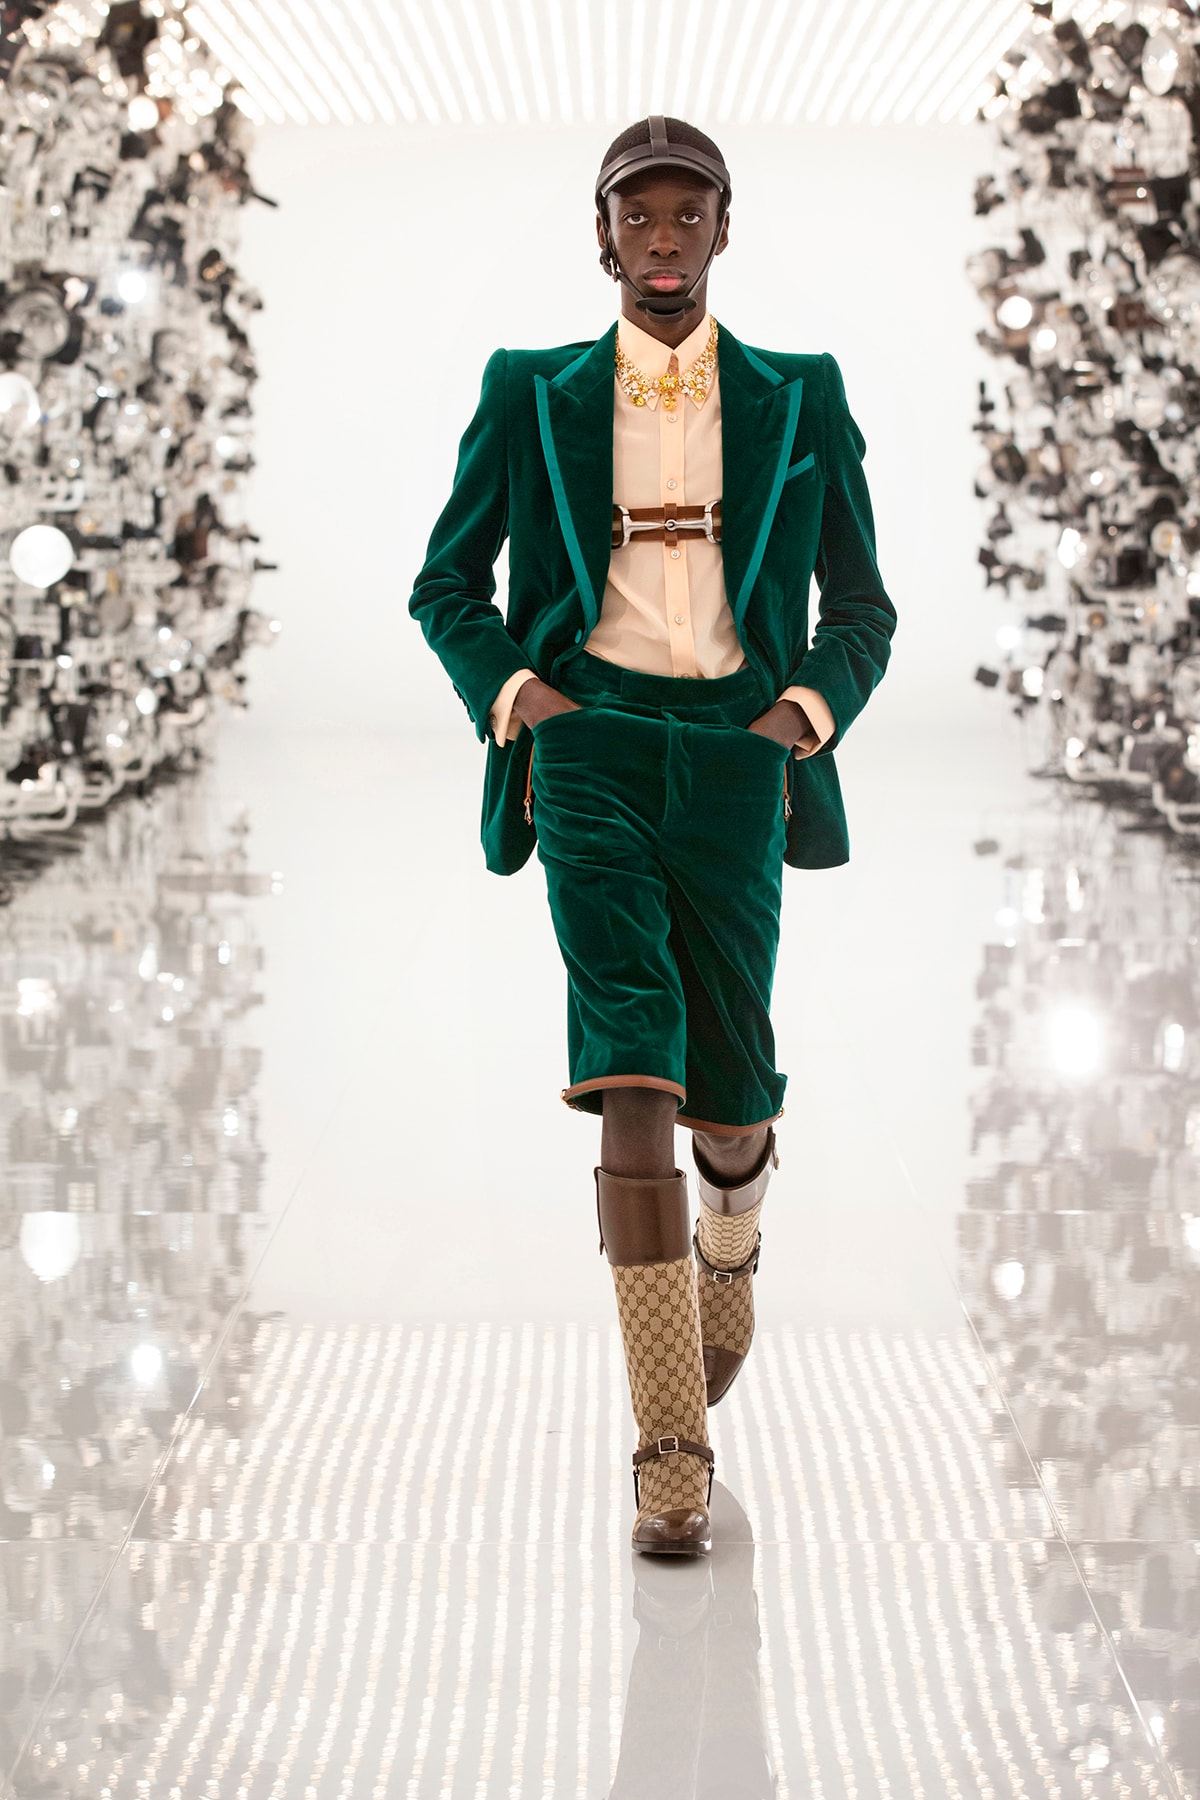 Gucci Fall/Winter 2021 "Aria" Collection Balenciaga Collaboration